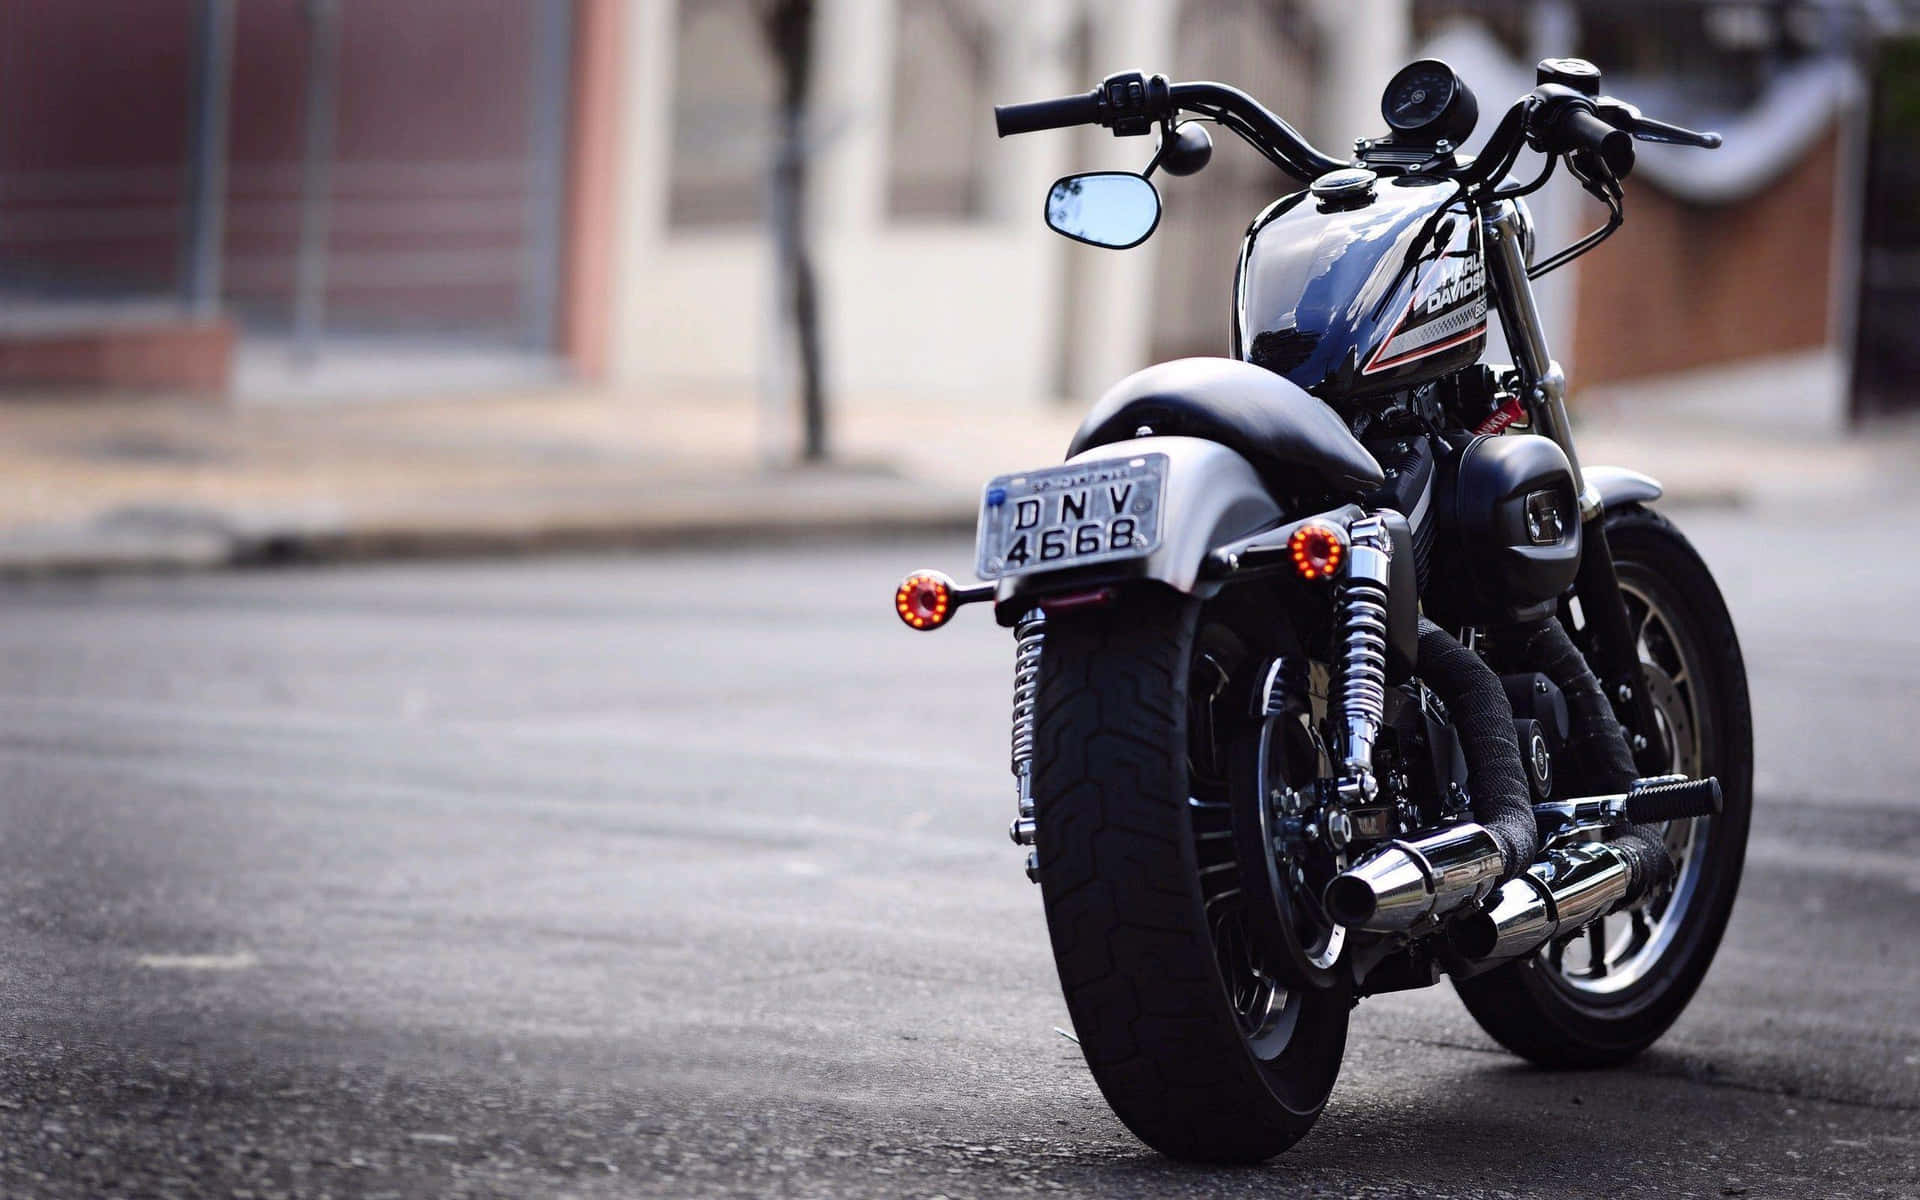 Verlockenderhintergrund Mit Einer Komplett Schwarzen Harley Davidson Motorrad